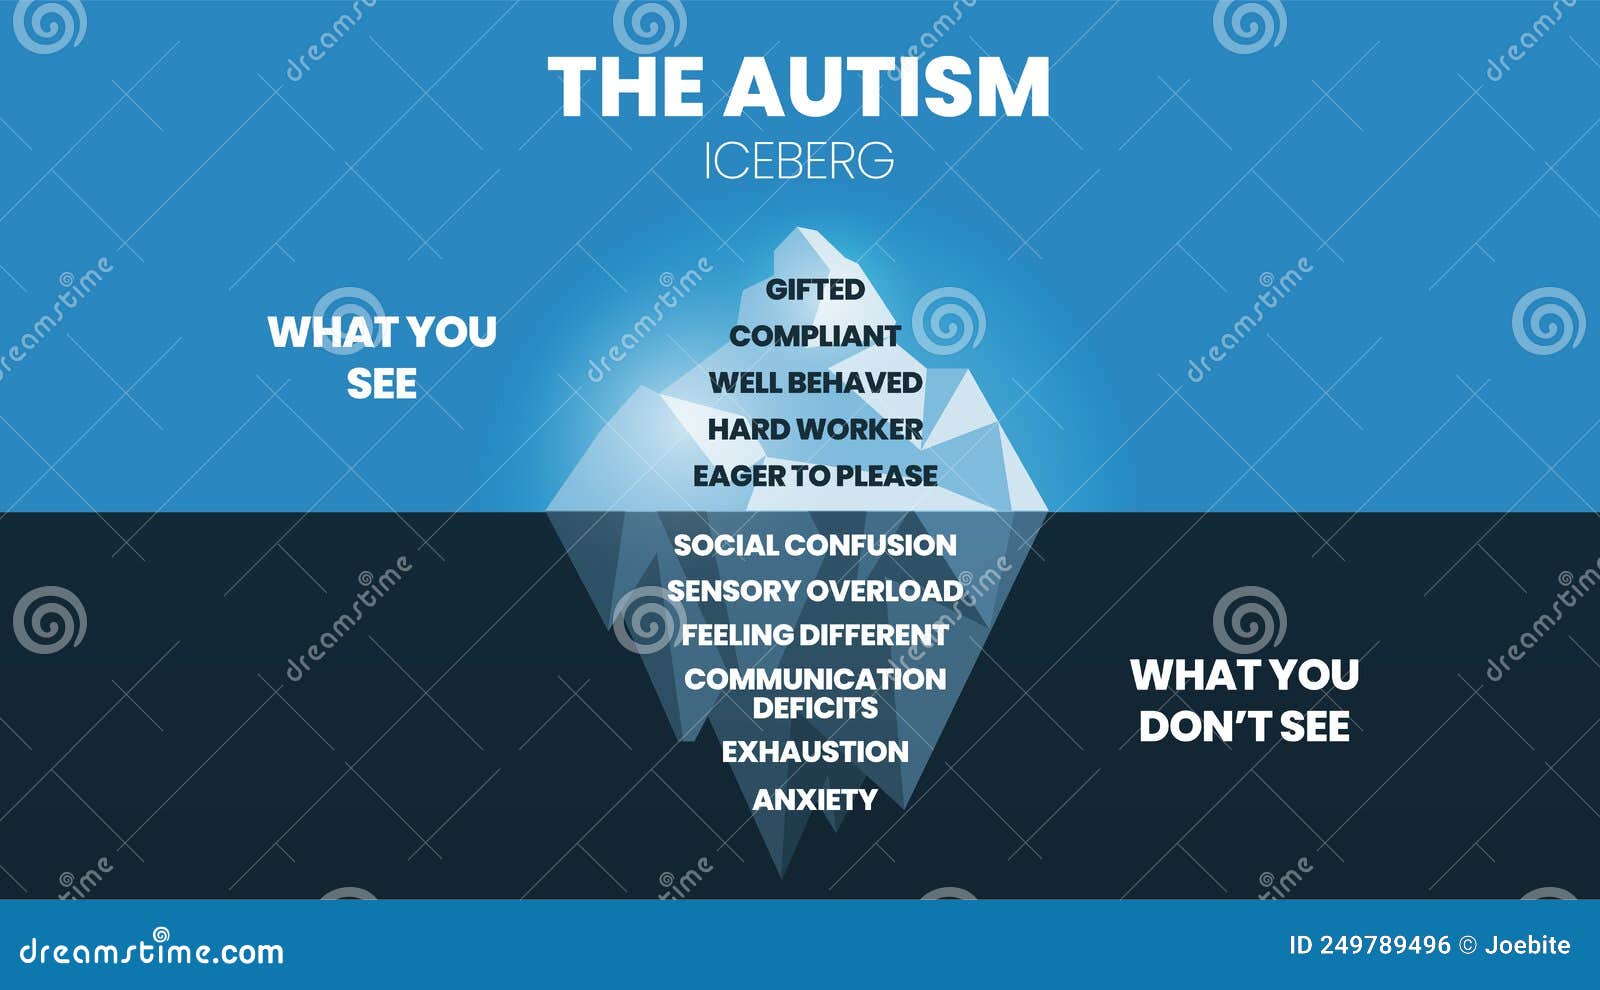 🦋 L'ICEBERG DU TDAH TRADUCTION - Autiste tout simplement